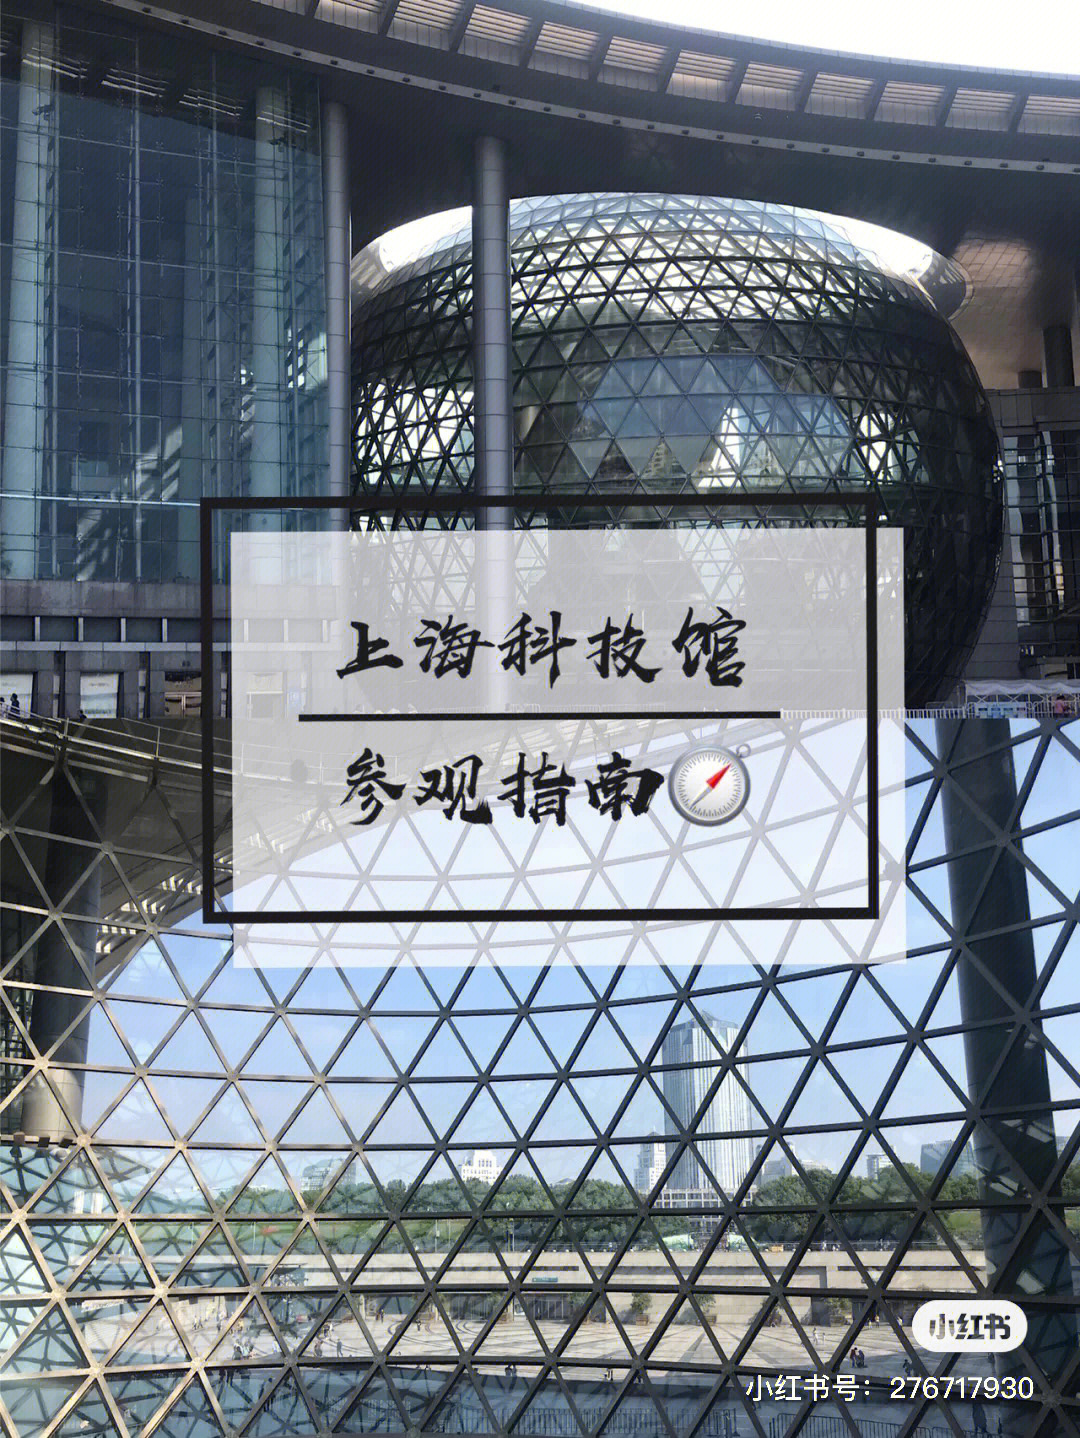 上海科科技馆攻略地理位置:浦东新区世纪大道2000号推荐交通:轨道交通